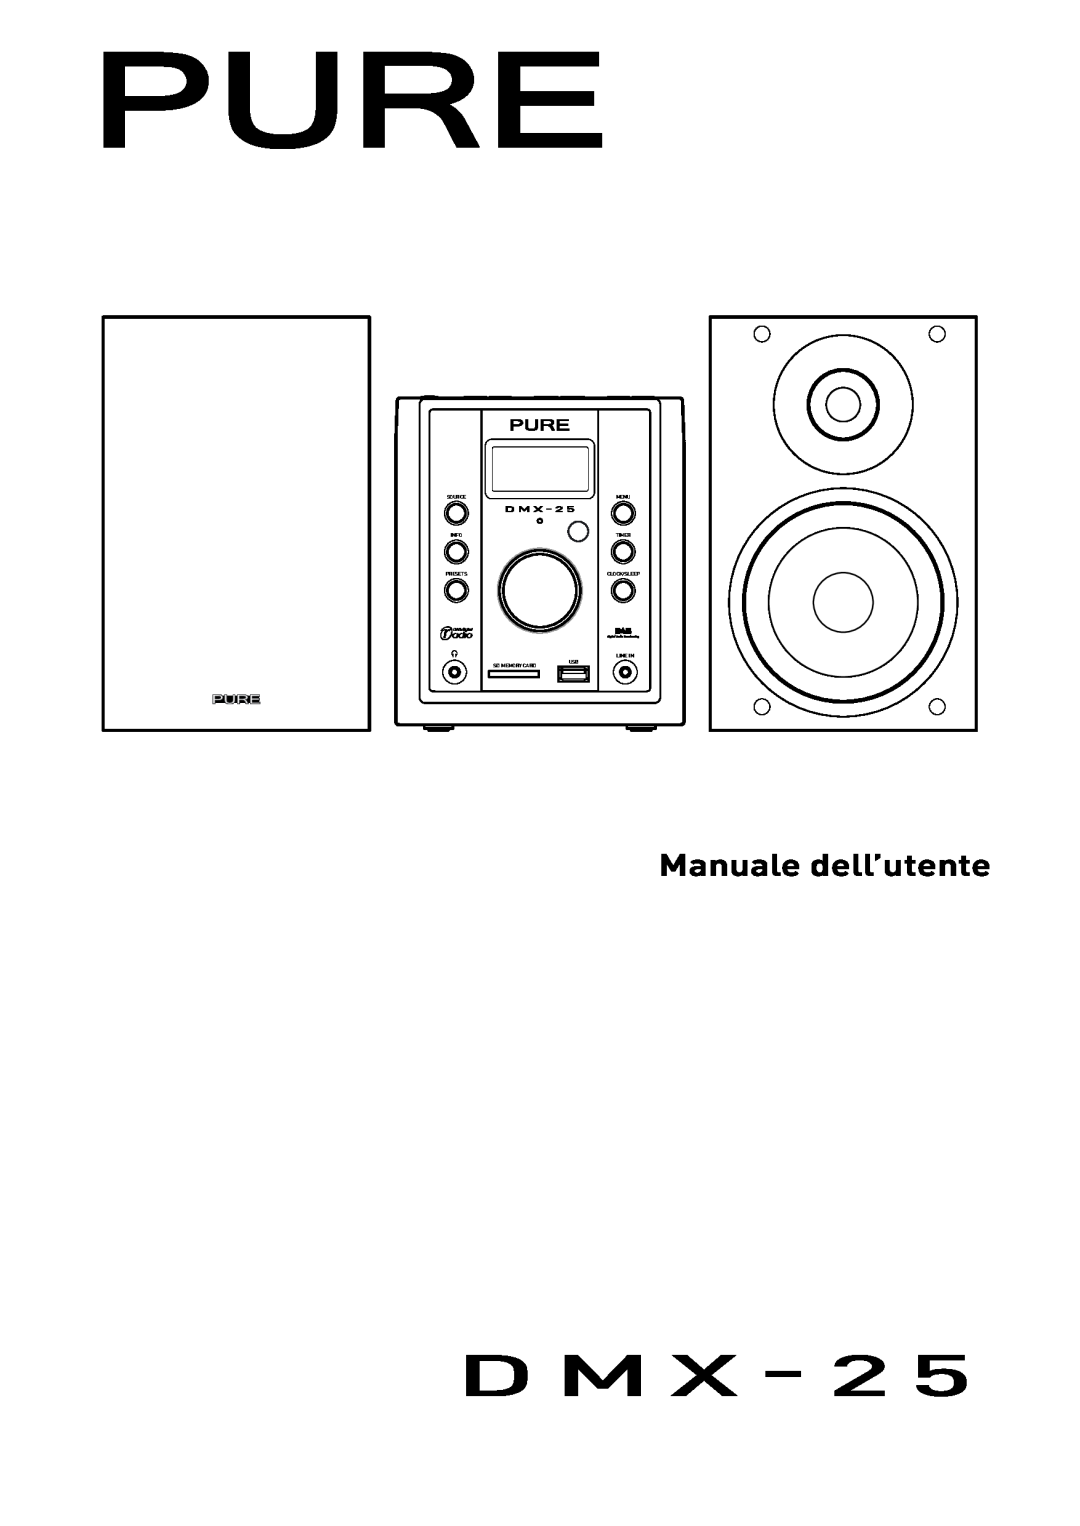 Pure Digital DMX-25 manual Manuale dell’utente, D M, 7= +, 5-6=, 416-16, 5-57 A+, 16.7, +47+3 